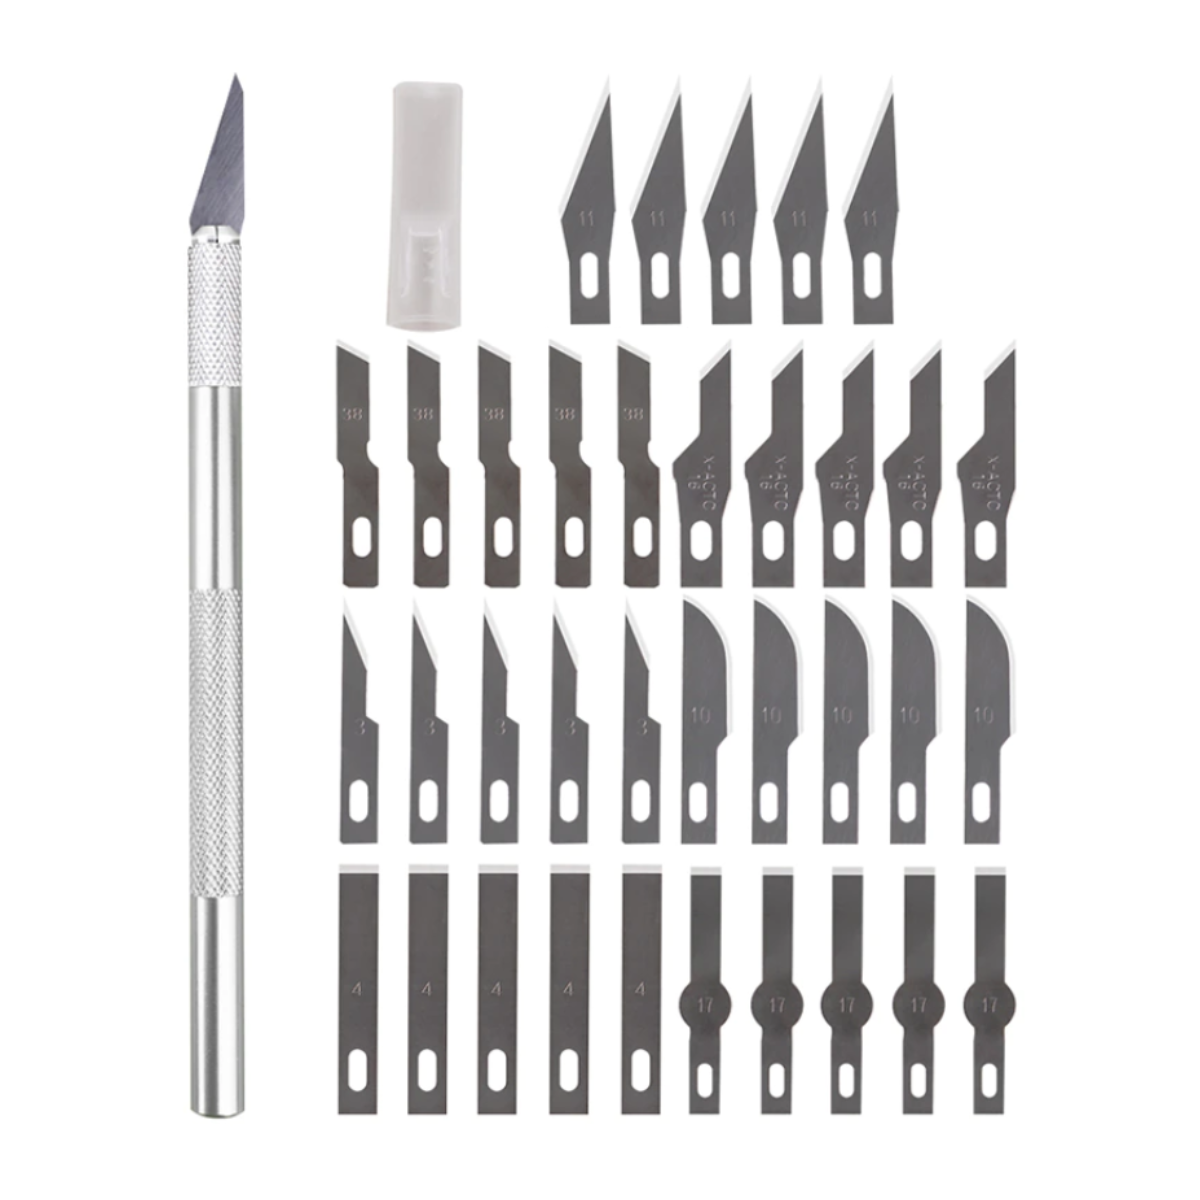 Нож-скальпель Run Energy для моделирования с лезвиями (40 шт.) скальпель со сменными лезвиями pinsun 2447 11